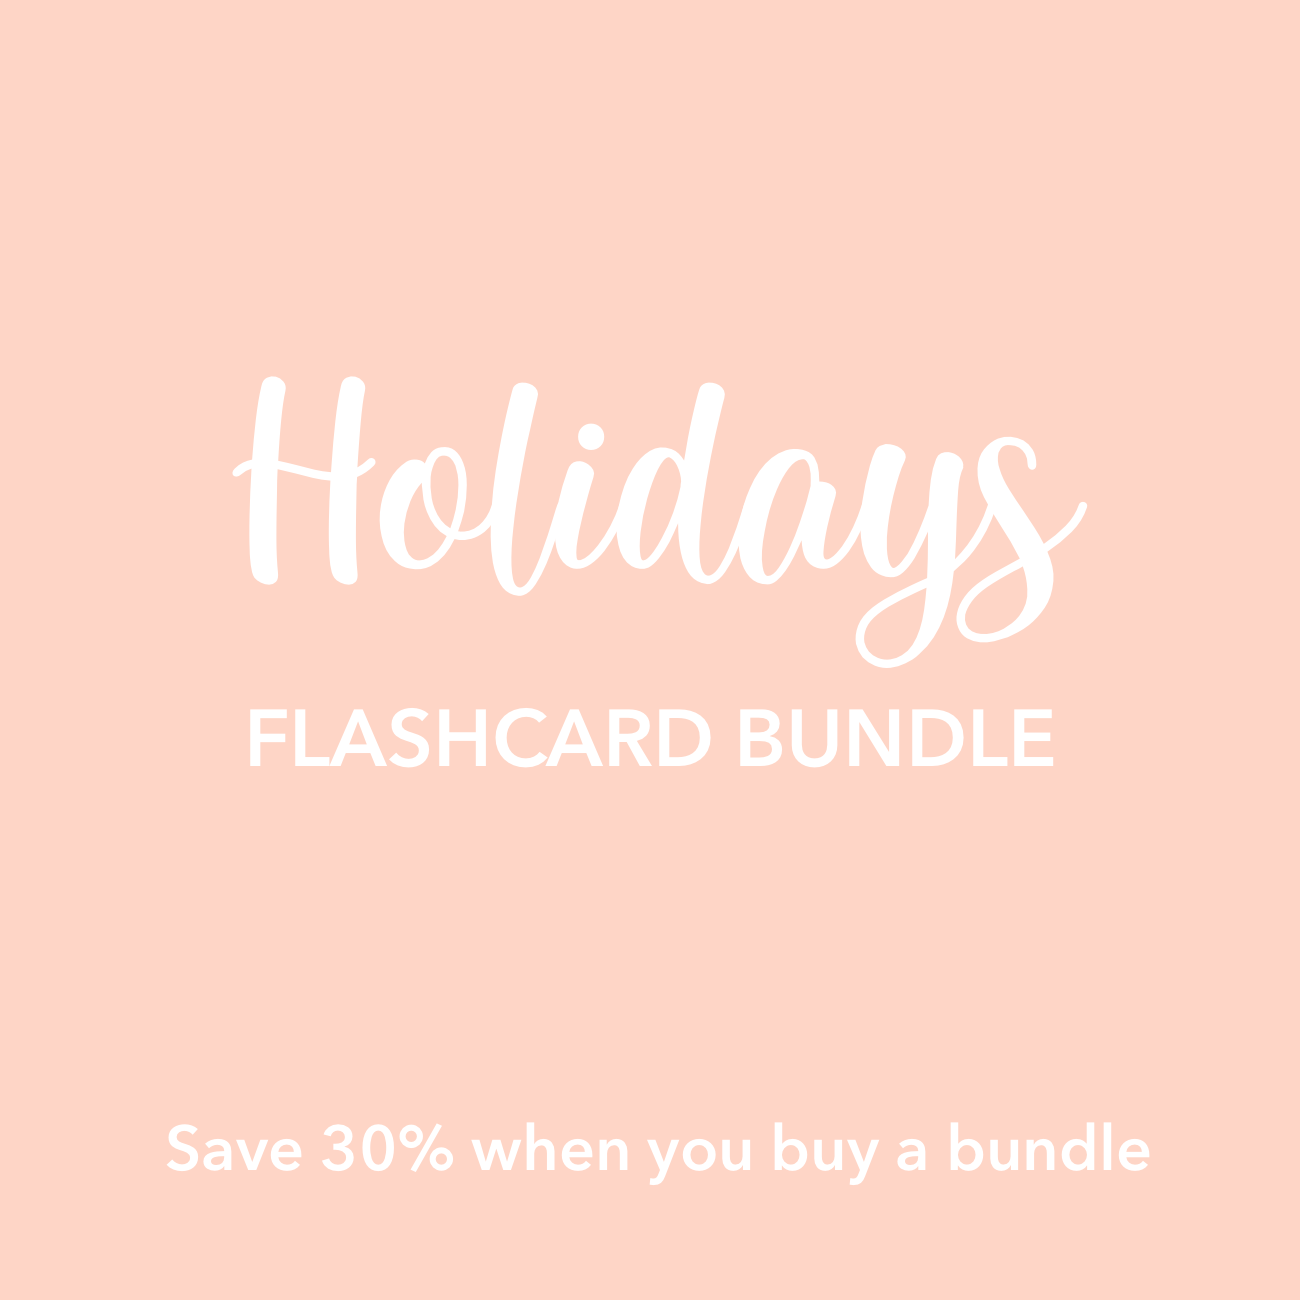 Holidays Flashcards Bundle